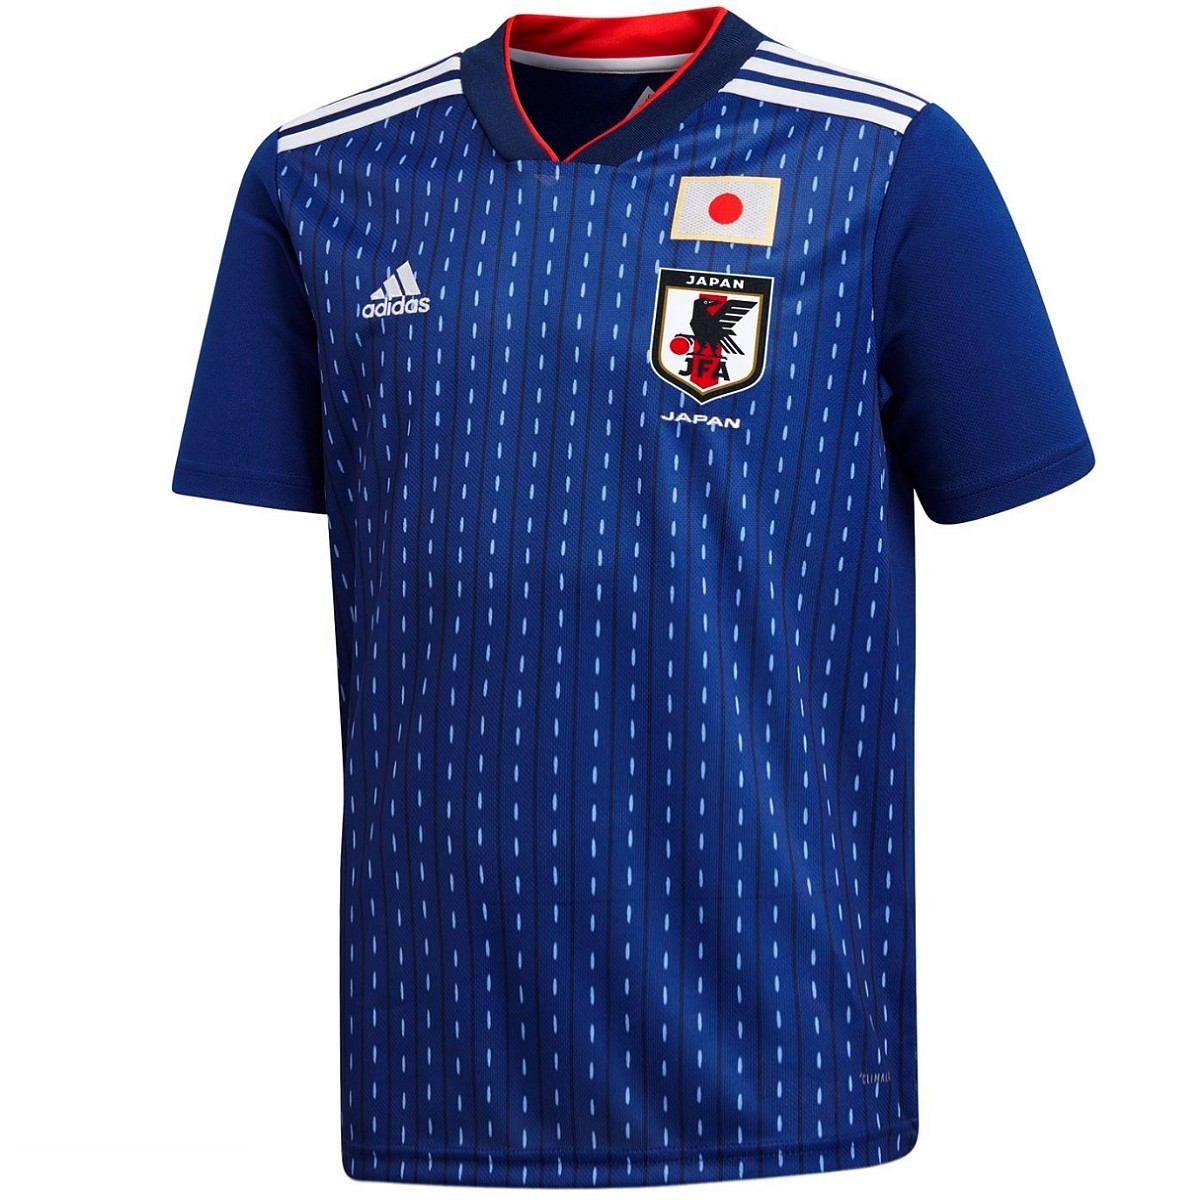 japan national team shirt